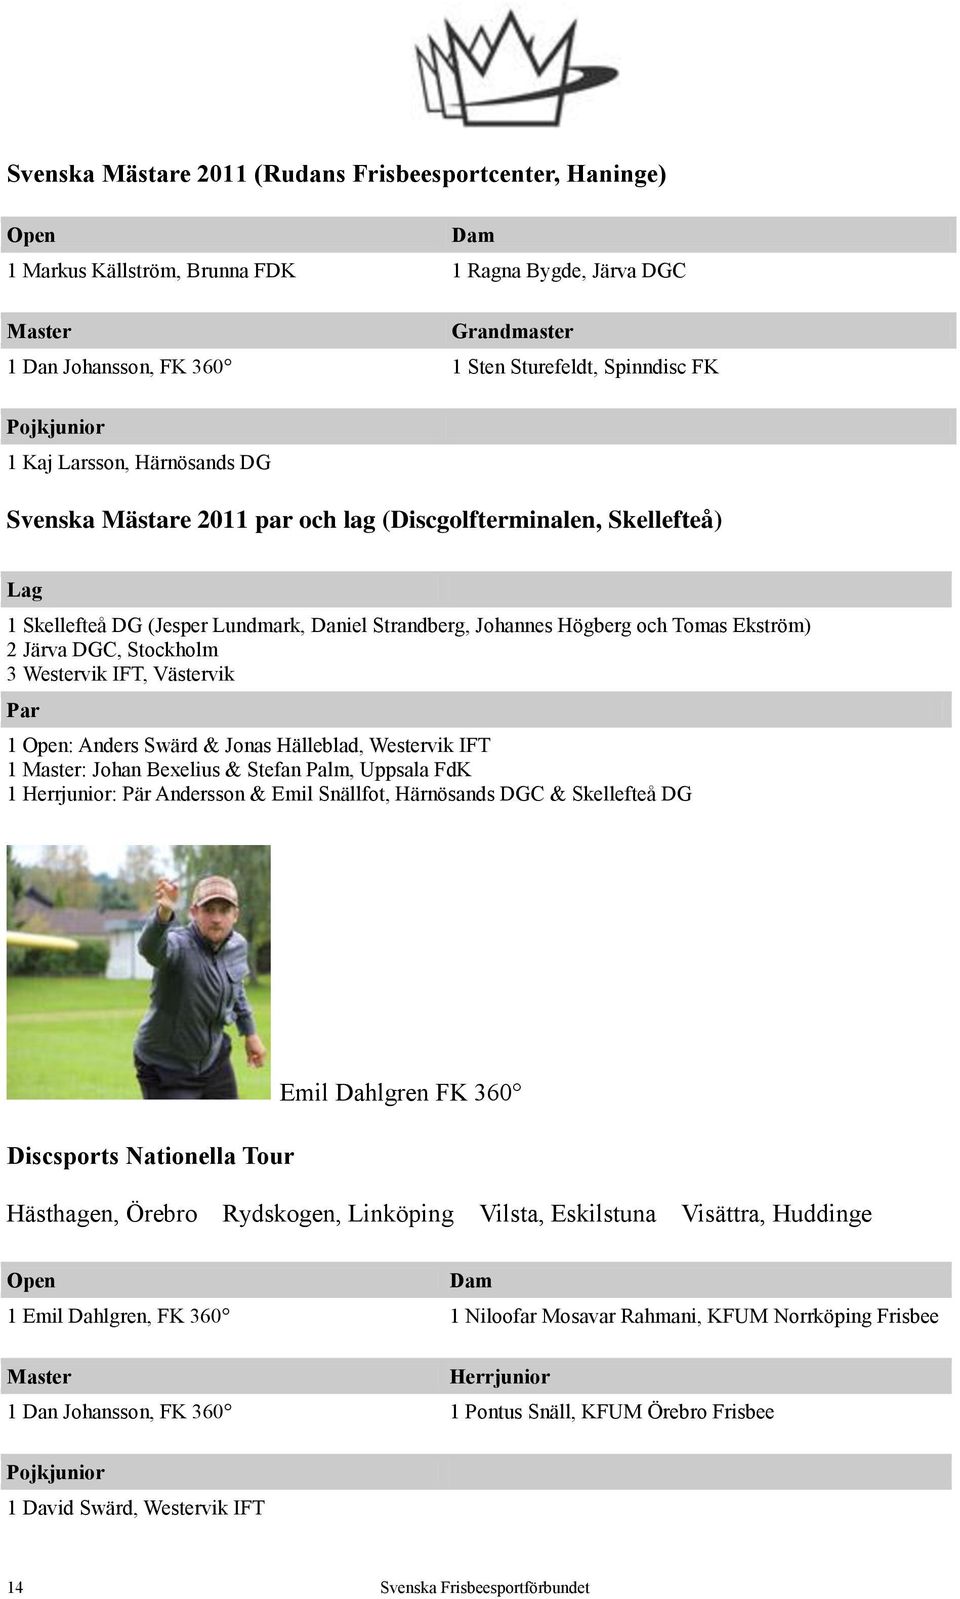 2 Järva DGC, Stockholm 3 Westervik IFT, Västervik Par 1 Open: Anders Swärd & Jonas Hälleblad, Westervik IFT 1 Master: Johan Bexelius & Stefan Palm, Uppsala FdK 1 Herrjunior: Pär Andersson & Emil